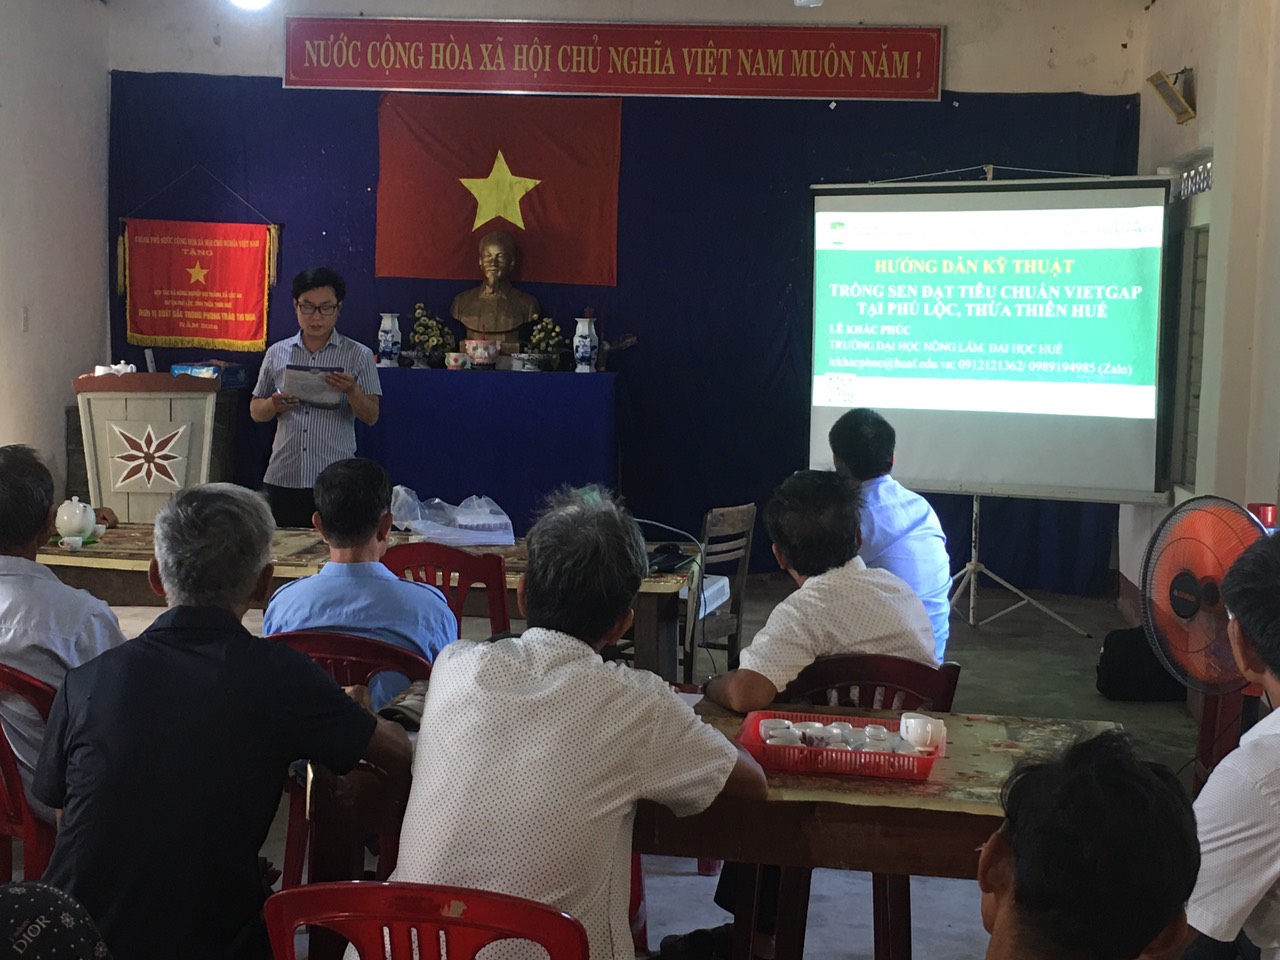 Tập huấn kỹ thuật trồng sen đạt tiêu chuẩn VietGAP tại huyện Phú Lộc, tỉnh Thừa Thiên Huế